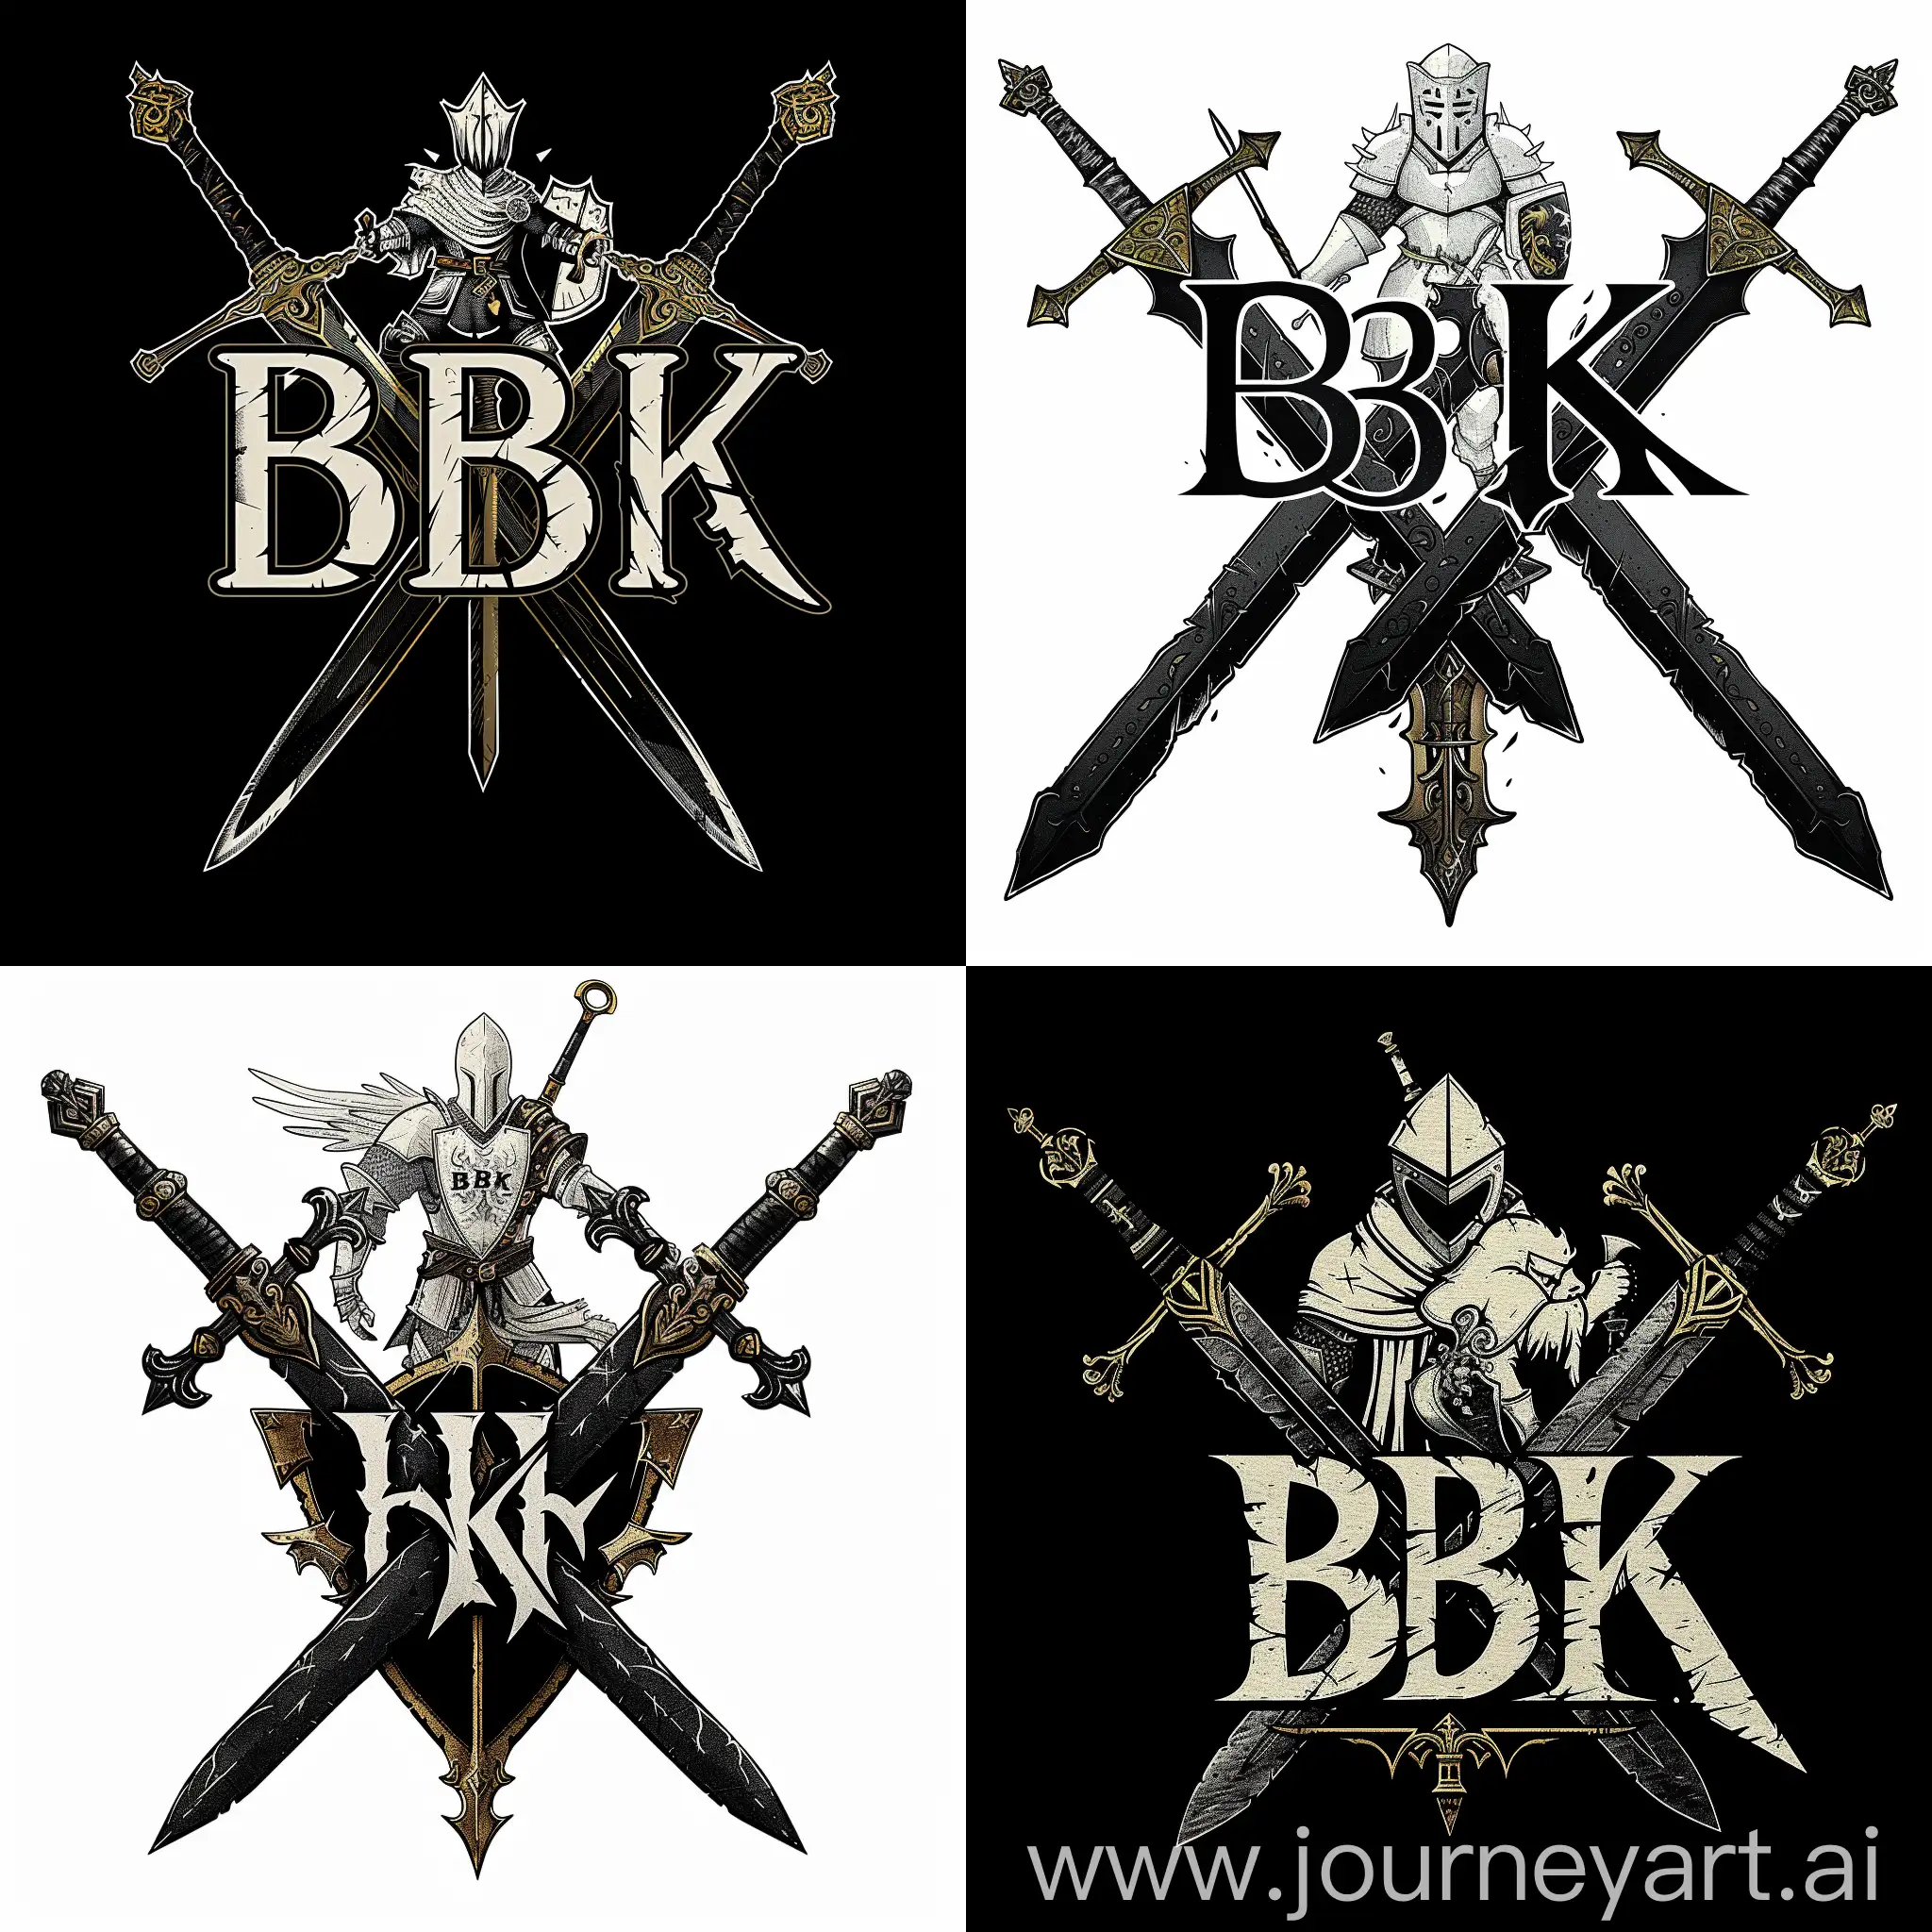 https://i.postimg.cc/qq77BkrS/1709915654324-3.png логотип "BK" Black Knight, где буквы "BK" стилизованы в форме двух скрещенных мечей с орнаментами на лезвиях, между мечами изображен белый рыцарь в боевой позе, держащий в руках щит и меч, цветовая гамма предусматривает черные мечи, белый рыцаря, готический для написания "BK" в форме мечей